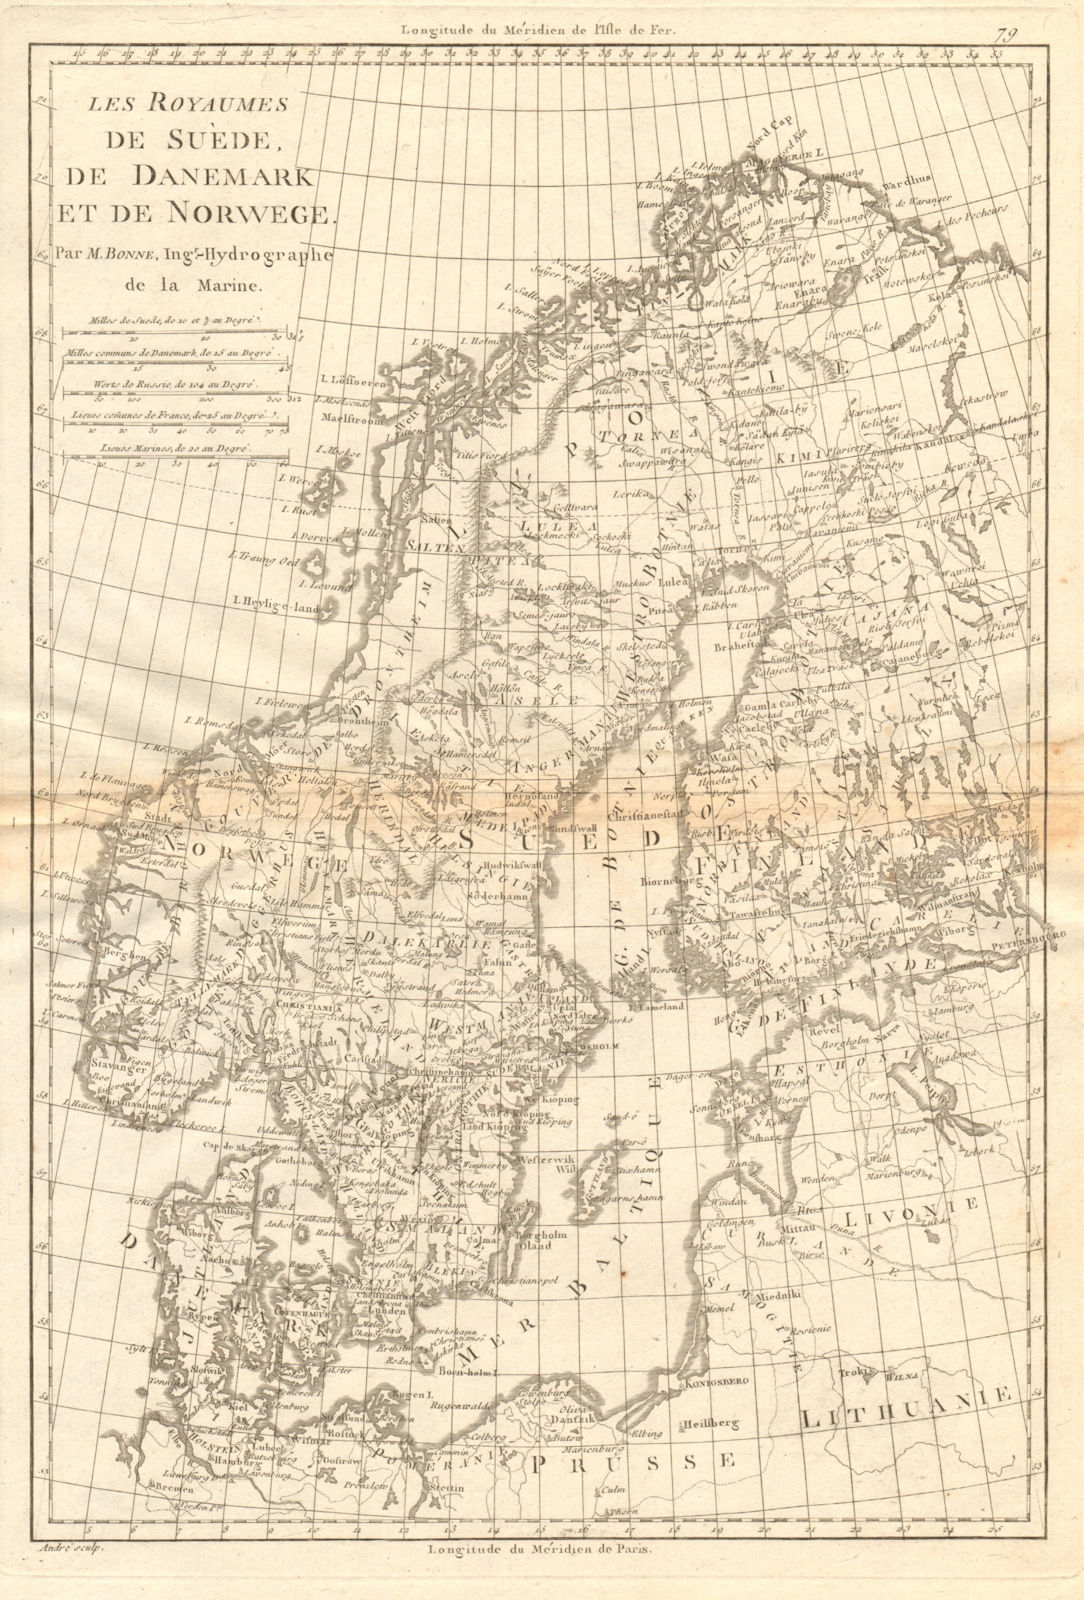 Les Royaumes de Suede, de Danemark et de Norwege. Scandinavia. BONNE 1787 map